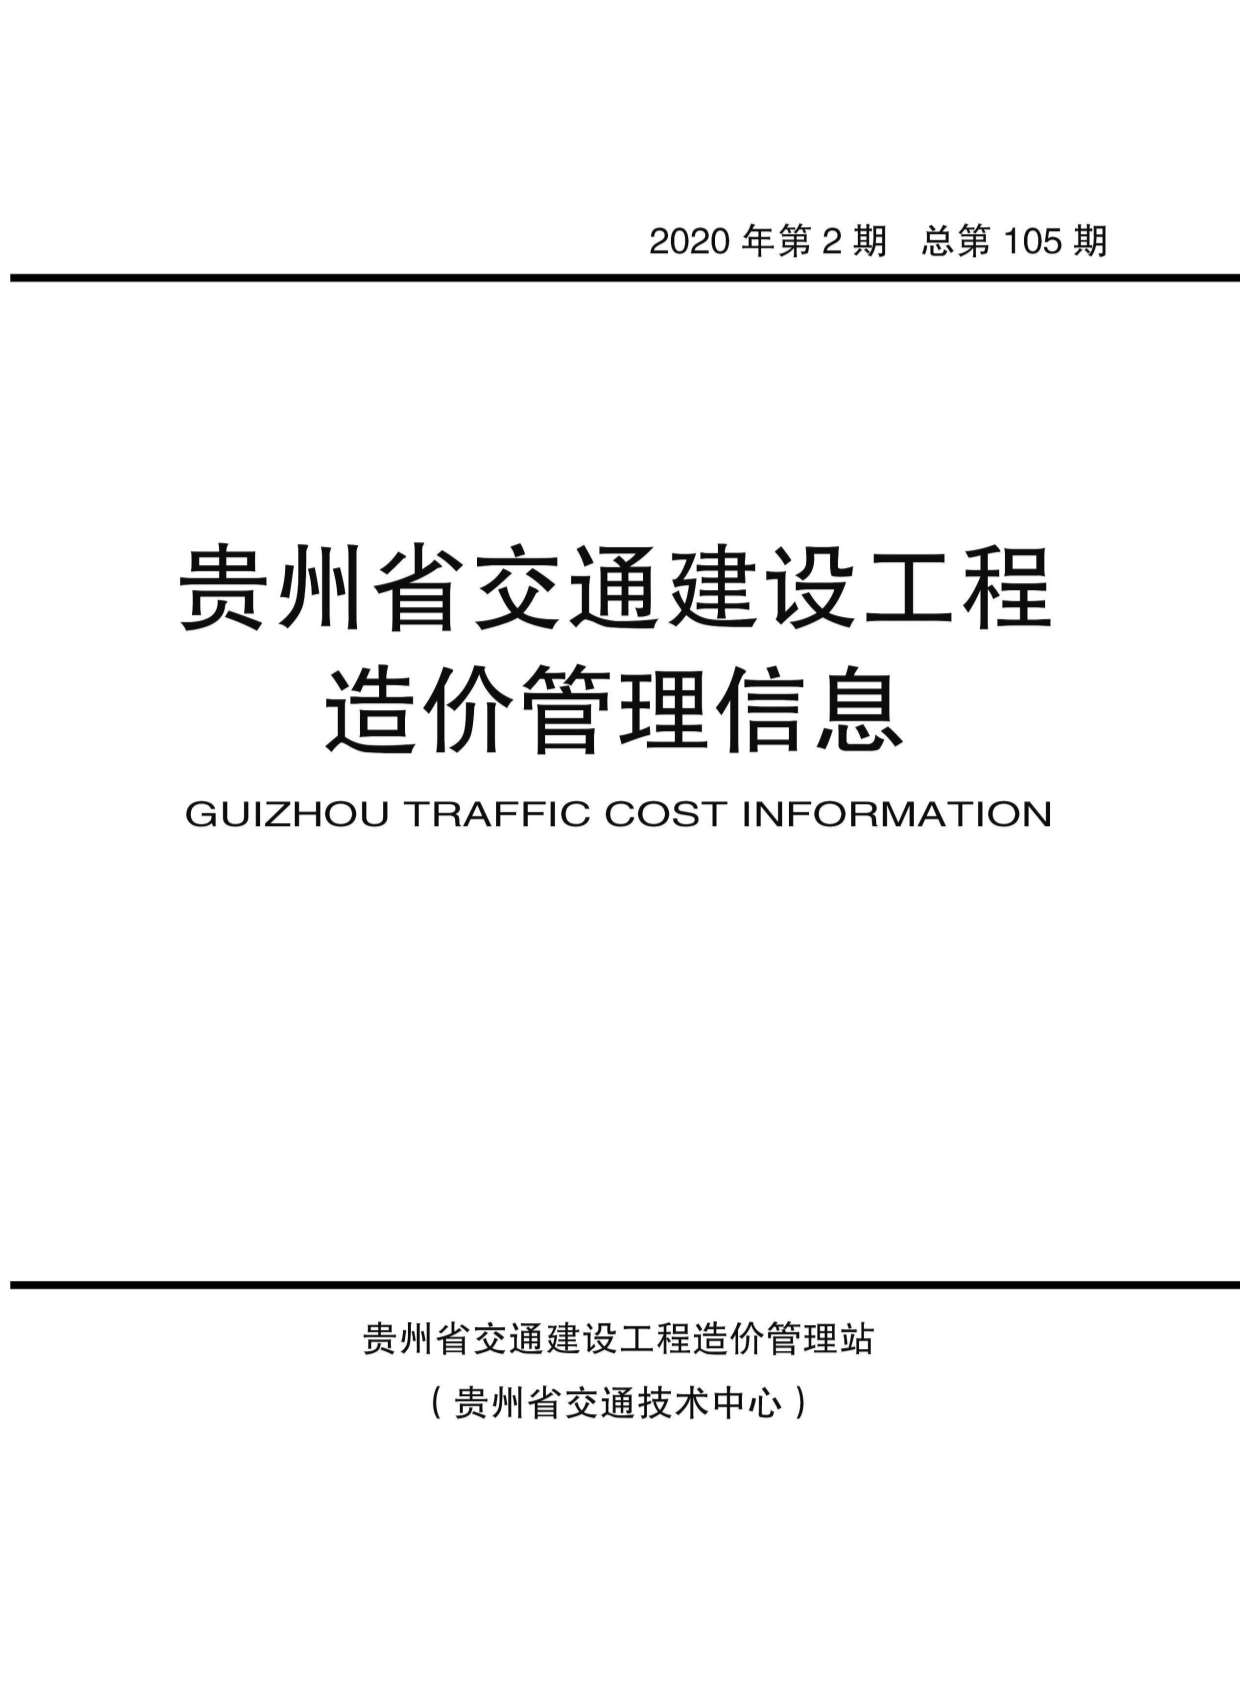 贵州省2020年2月交通公路信息价